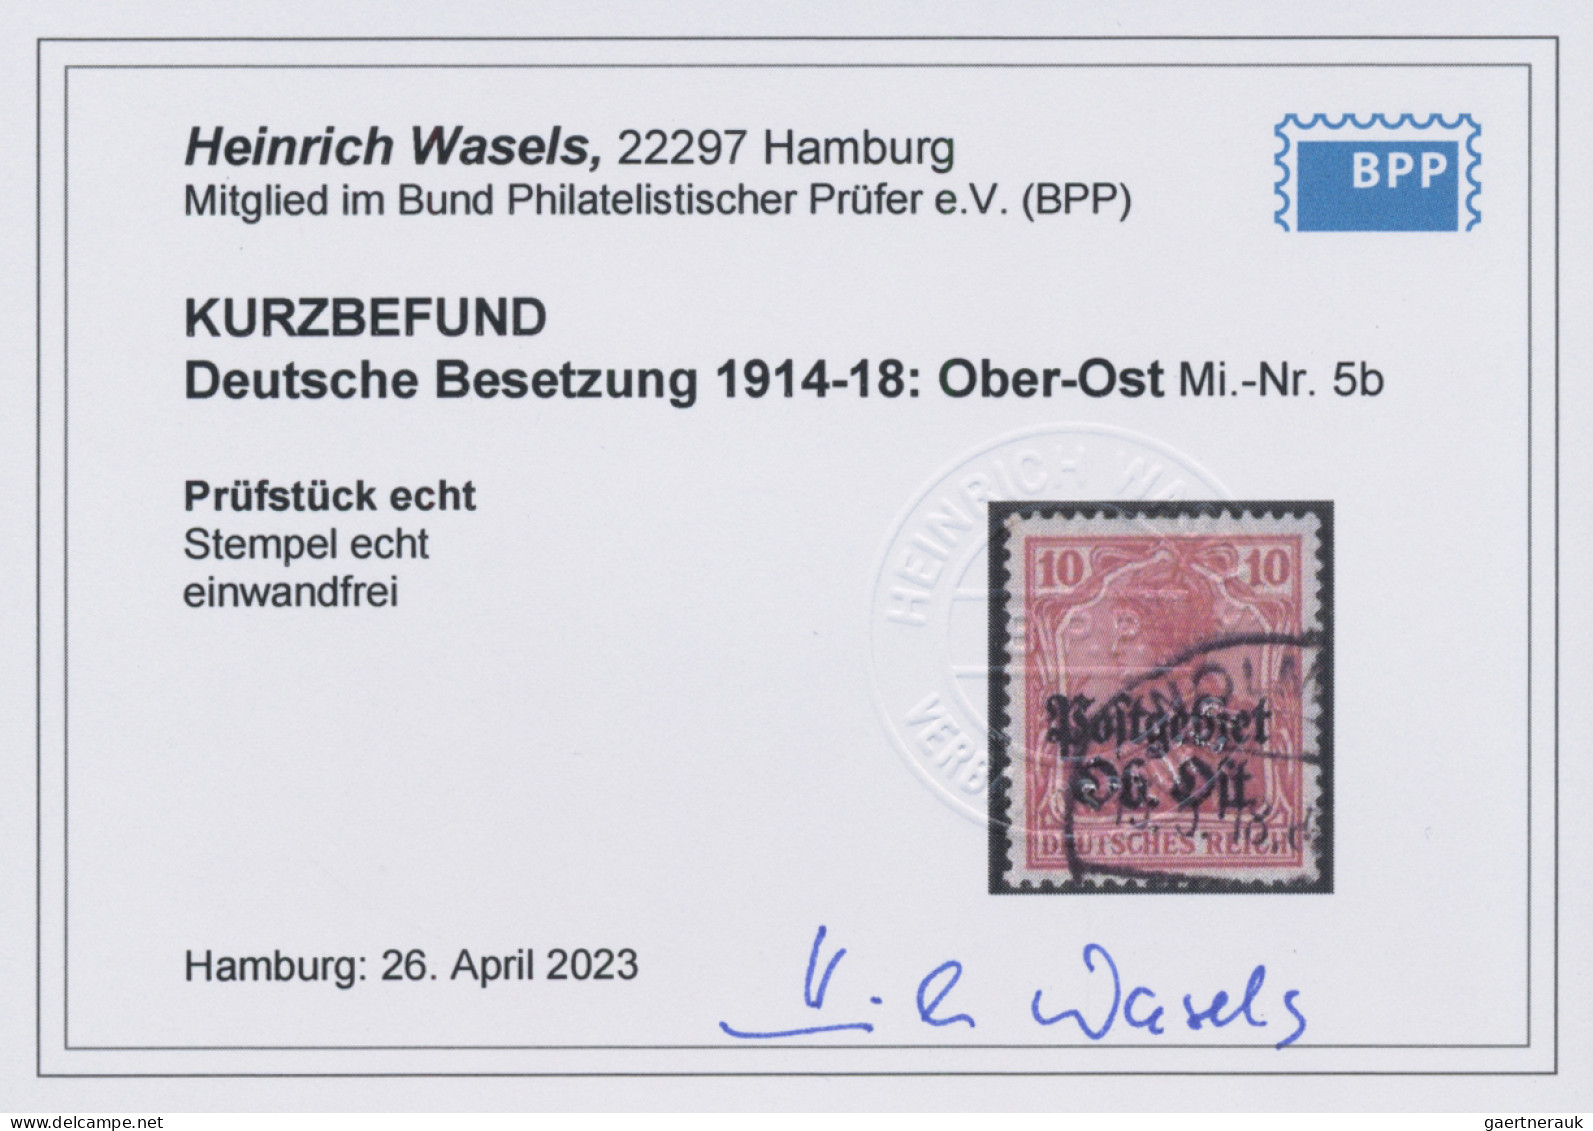 Deutsche Besetzung I. WK: Postgebiet Ober. Ost: 1916, Germania mit Aufdruck "Pos